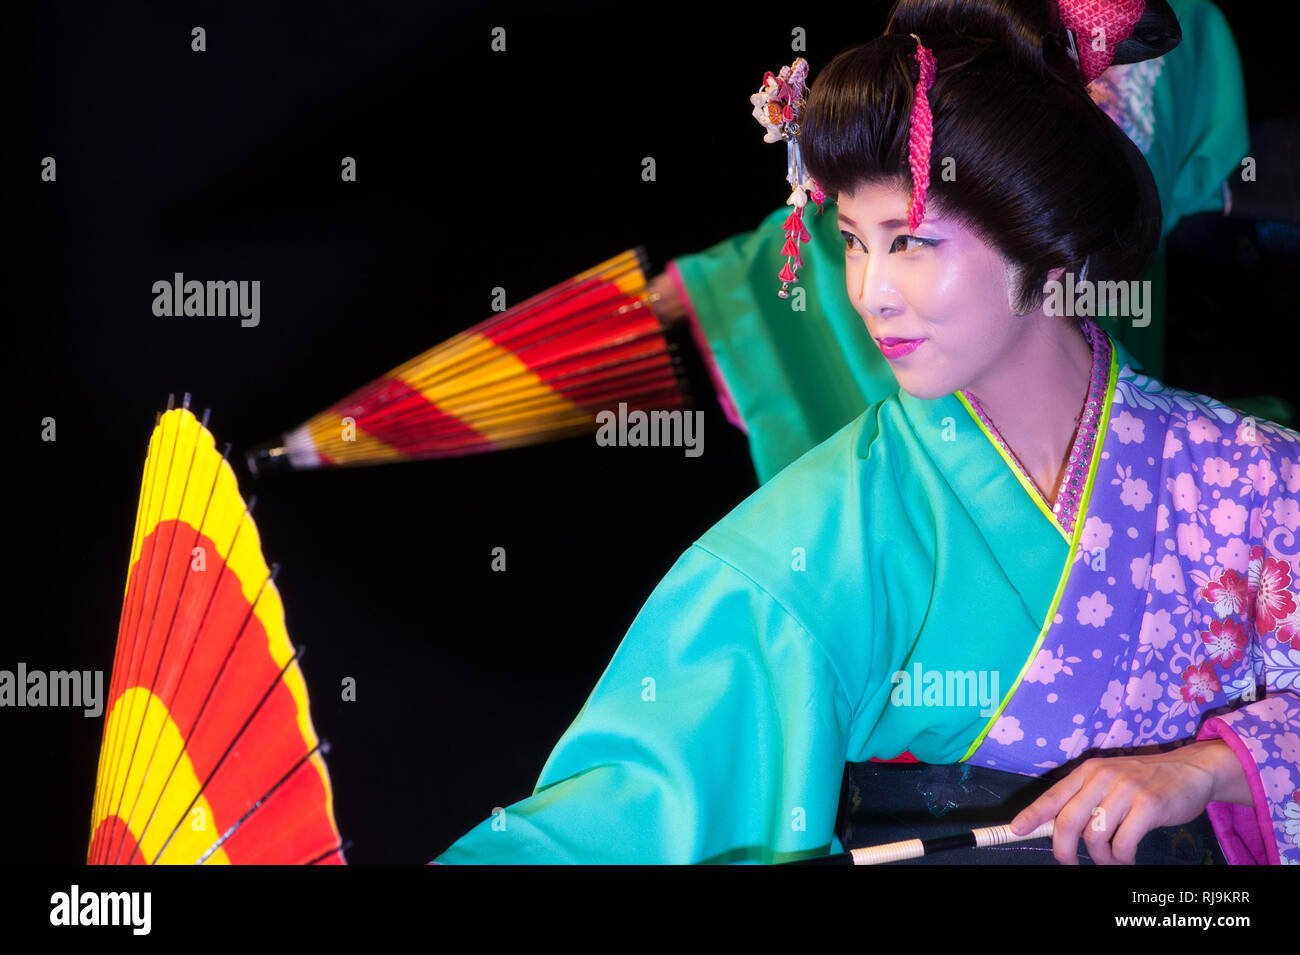 Florence, Italie - 18 novembre 2017 : belle jeune femme japonaise en kimono traditionnel, avec parasol, lors d'un spectacle de danse au Festival japonais '20 Banque D'Images